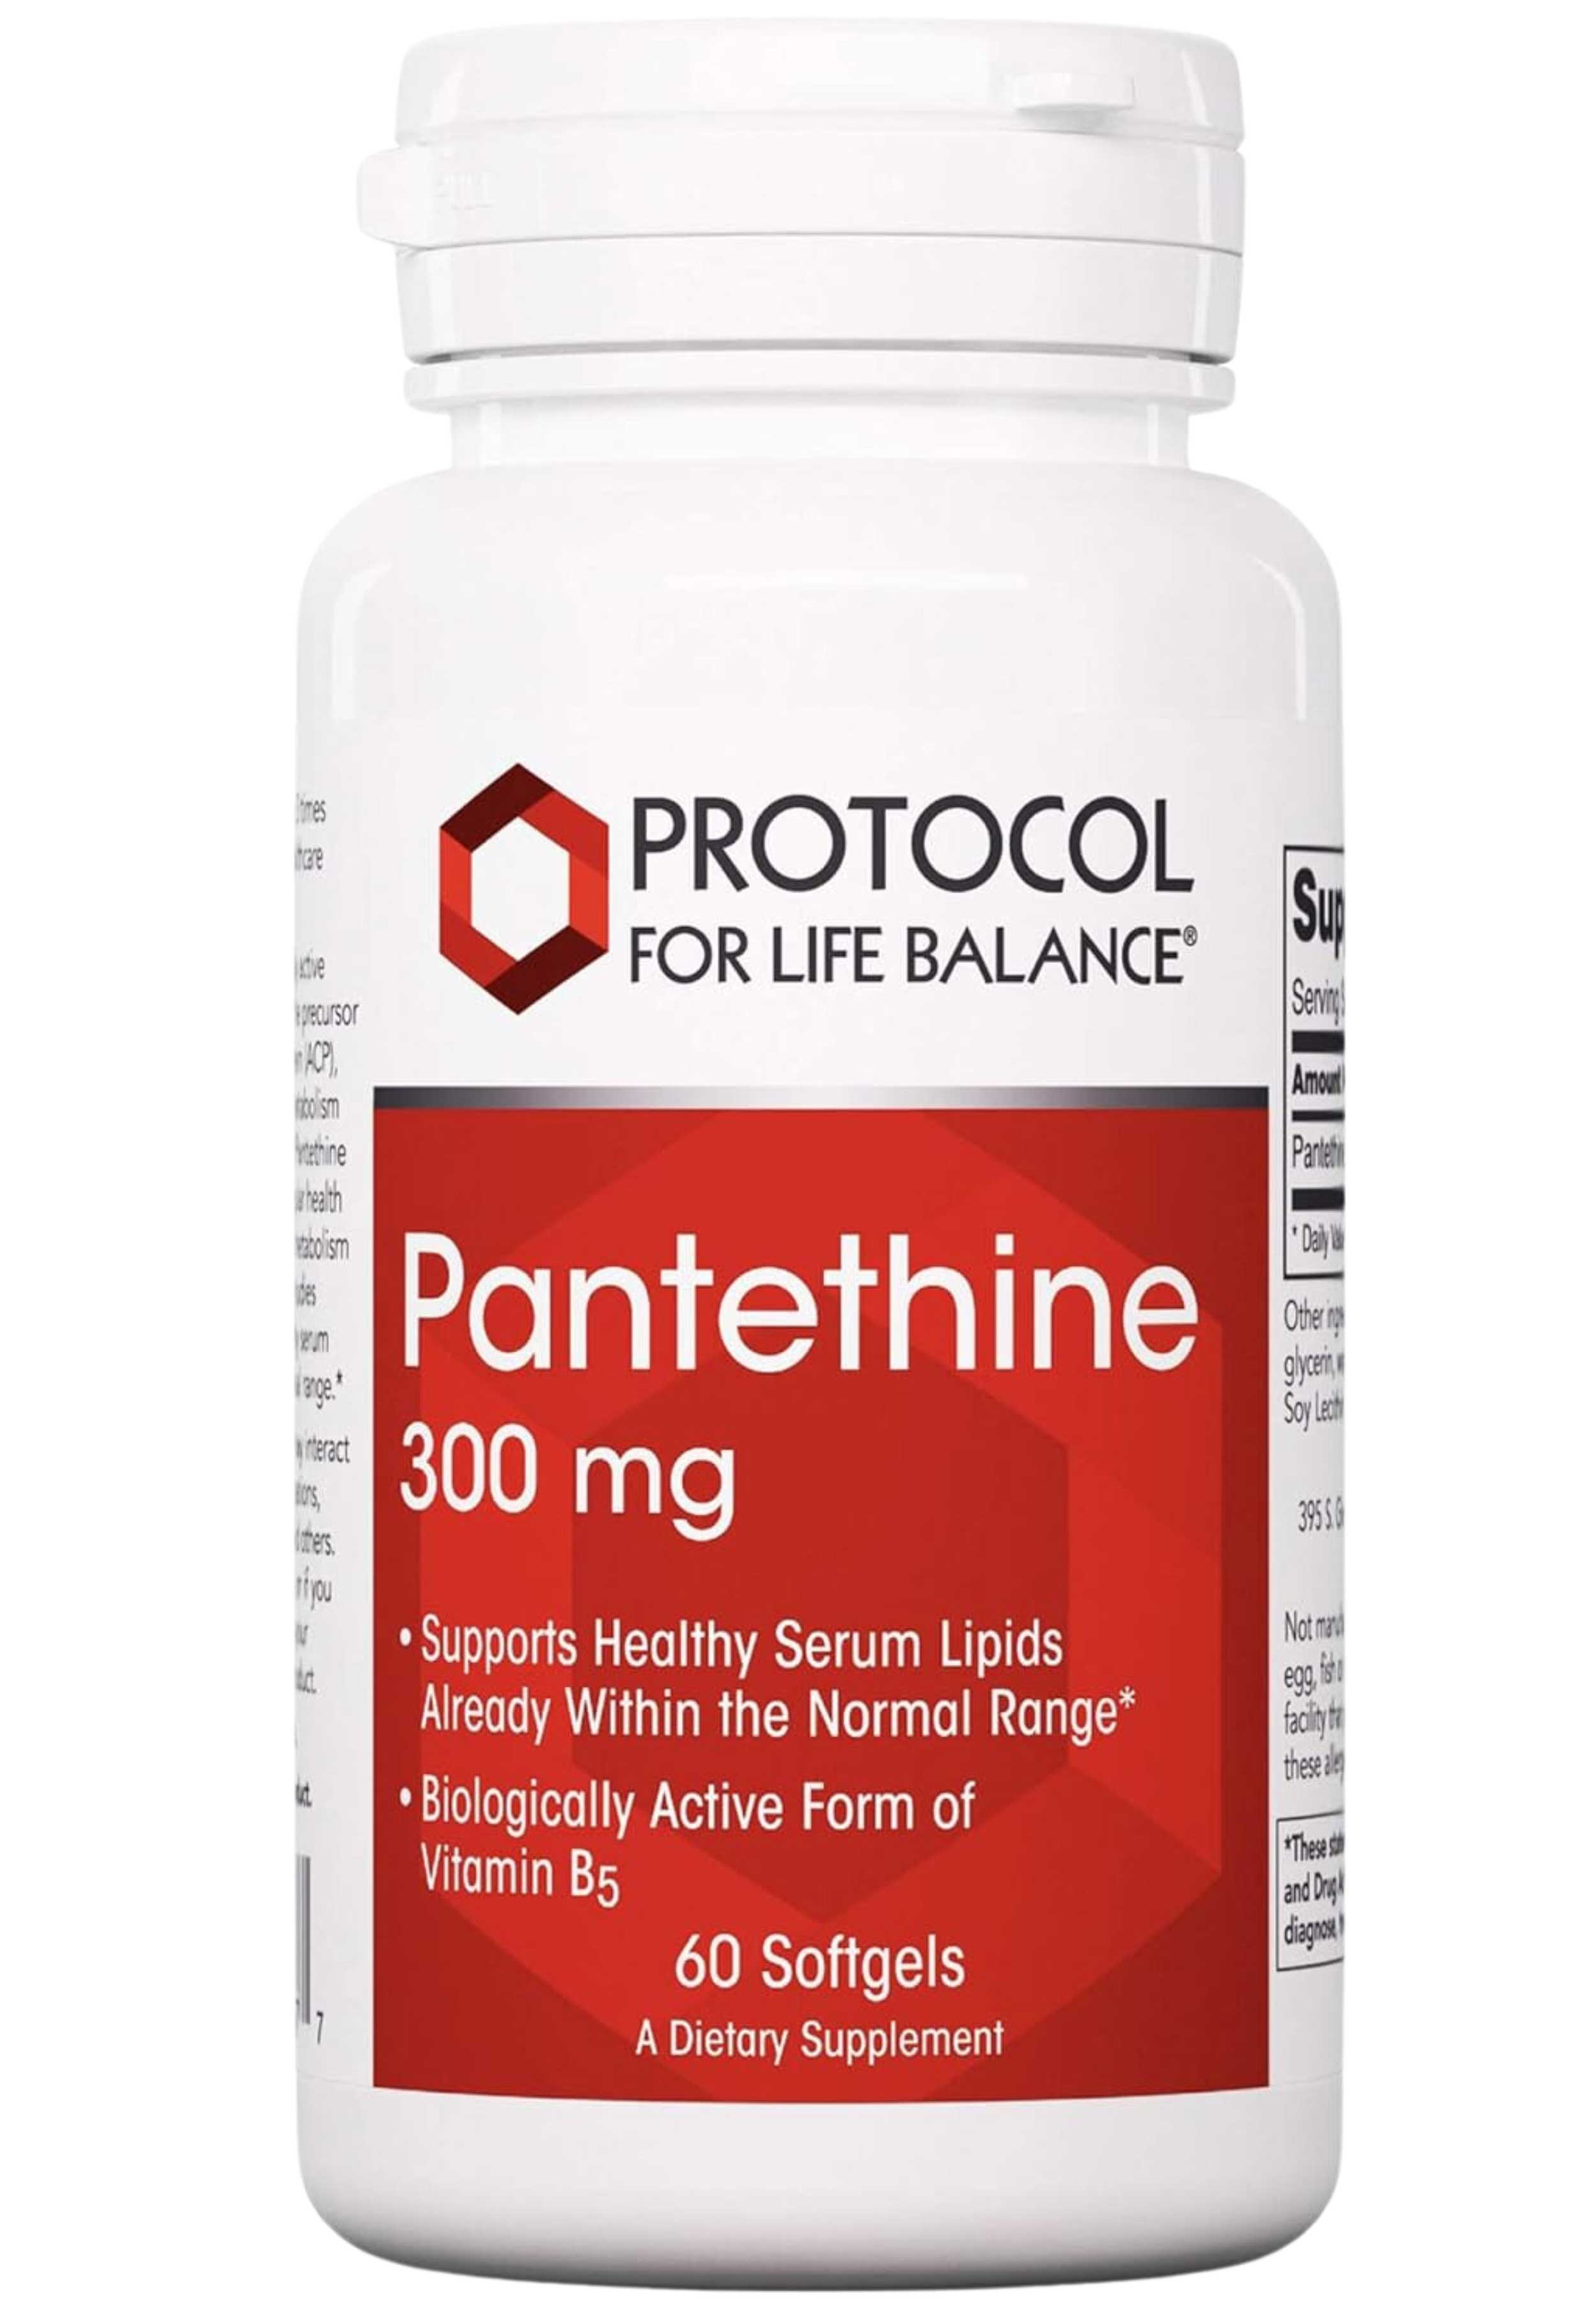 Protocol for Life Balance Pantethine 300 mg